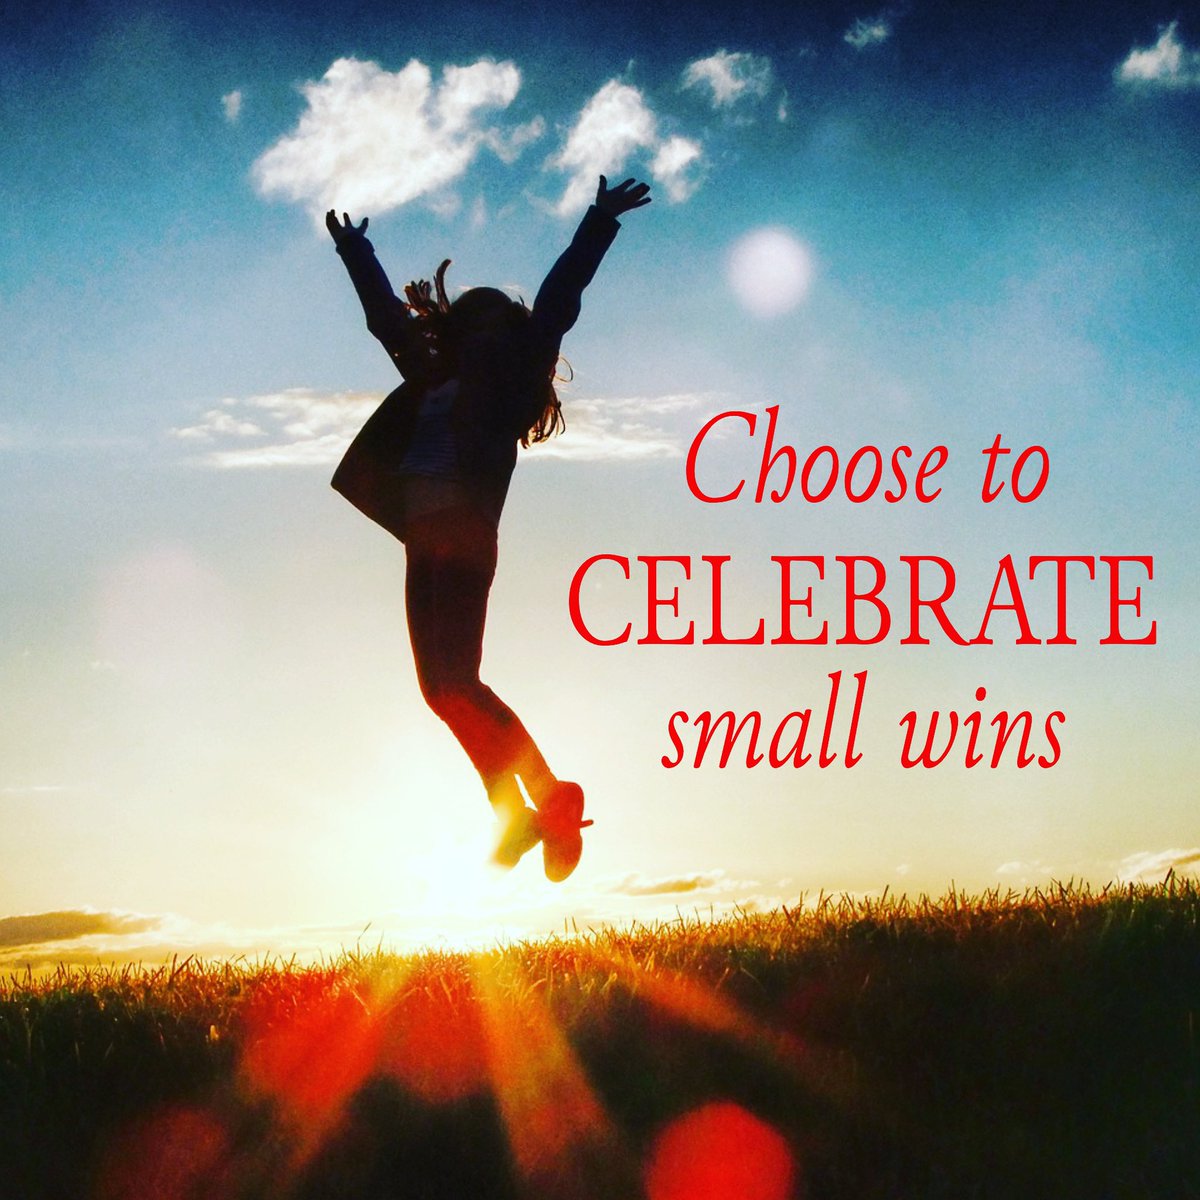 Choose to celebrate small wins.
#choosetocelebrate #celebratesmallwins #preciouswords #preciouswordsoflife #smallwinsmatter #smallwins